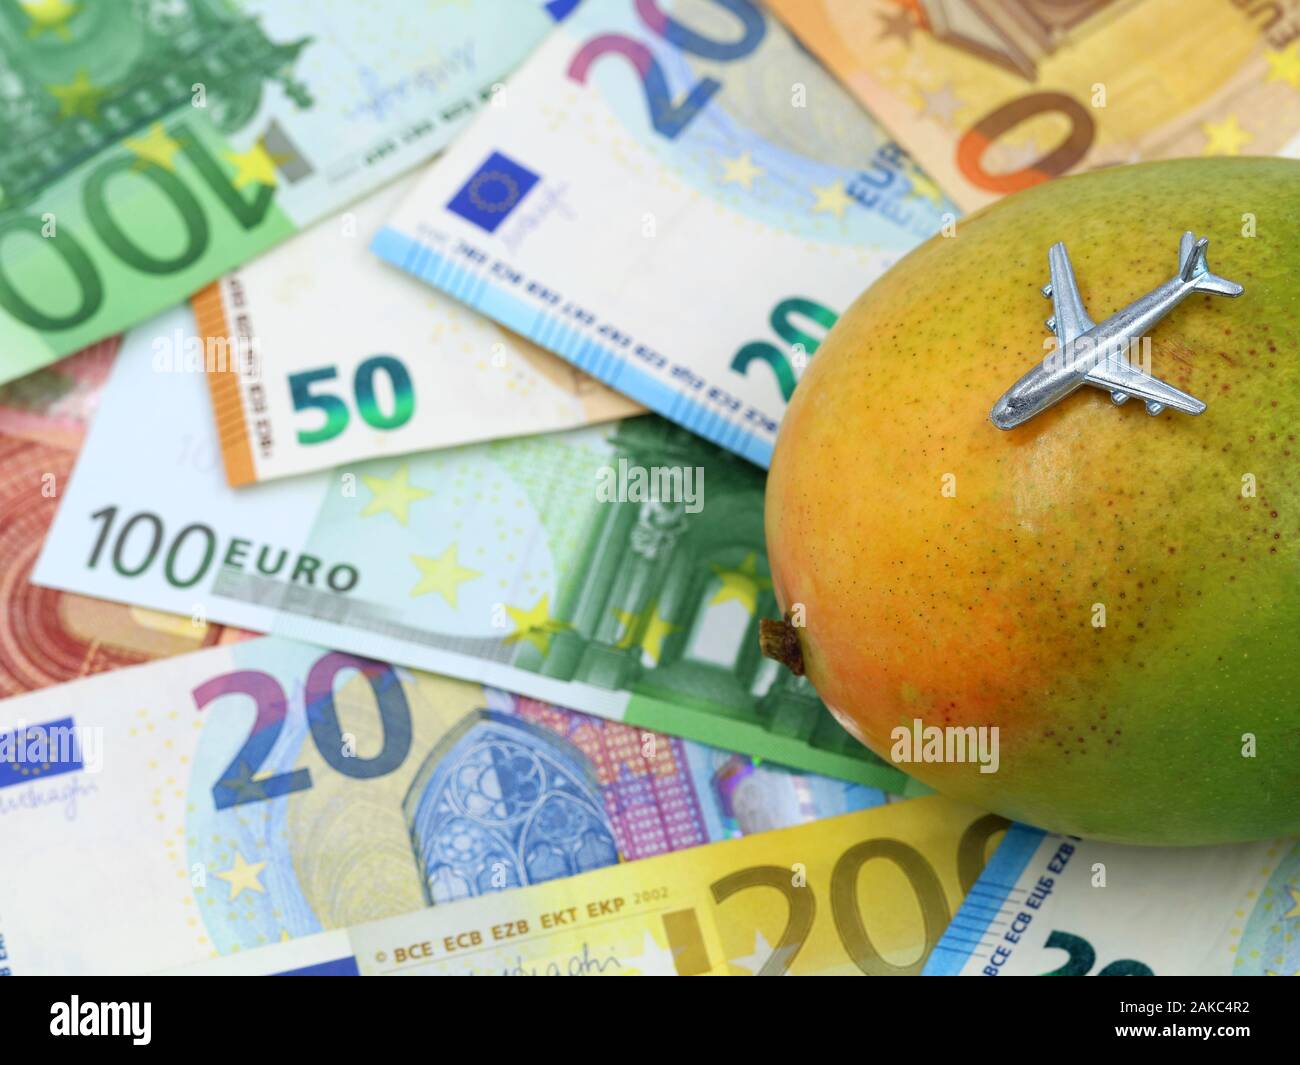 Miniatur Flugzeug auf Mango mit Euro-banknoten auf Hintergrund, Konzept der Kosten für exotische Früchte importieren Stockfoto